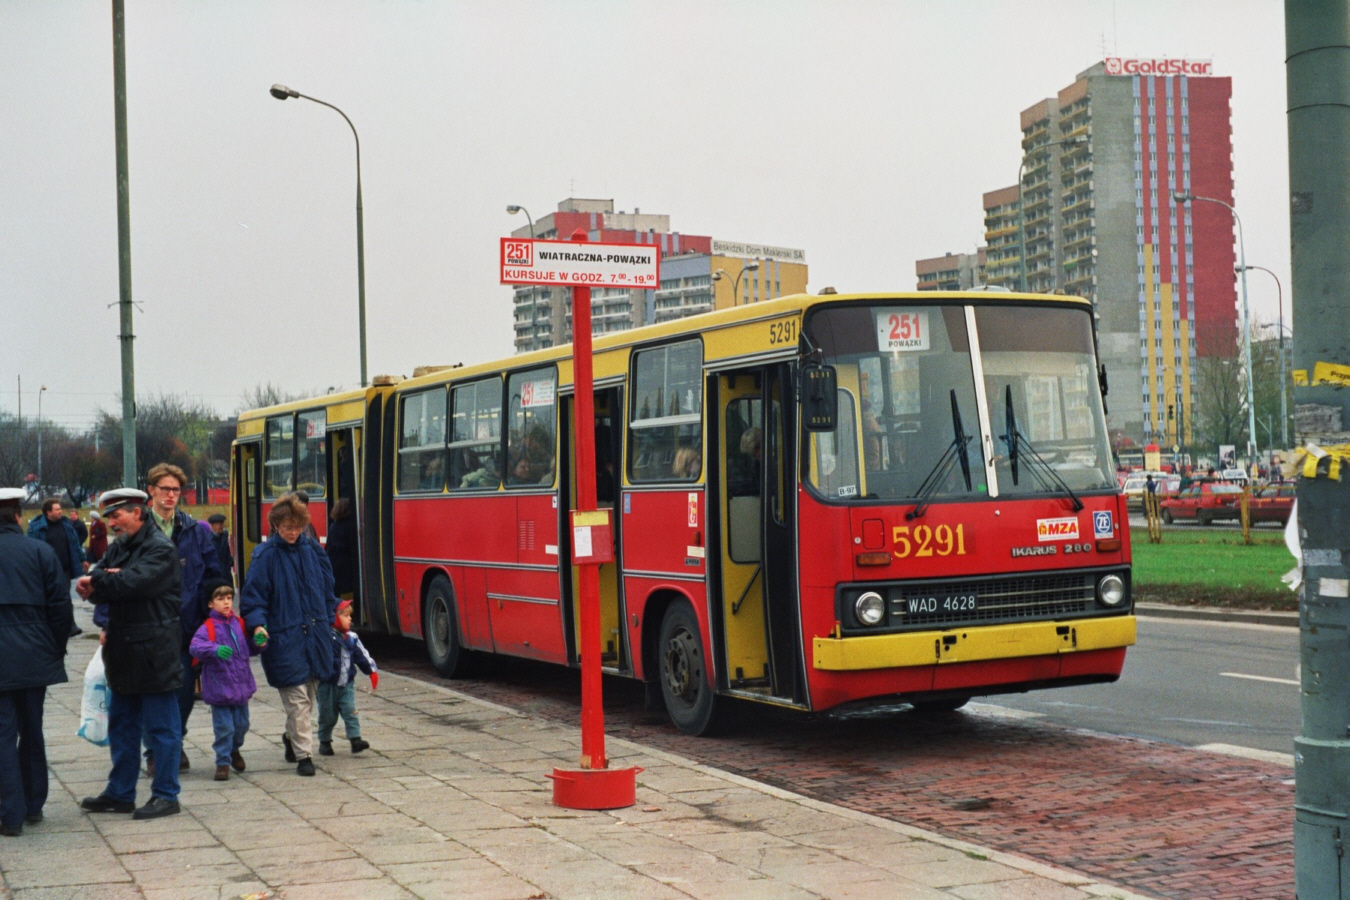 5291
Jeden z dwóch przedstawicieli Ikarusów 280 z rocznika 1992 przypisanych do zajezdni R-9 Chełmska.
Początkowo wóz miał numer 2960 przypisany ze starego zakresu numeracji. Następnie kiedy trafił do prywatnej firmy AKPOL otrzymał numer A306. Po powrocie do zajezdni R-9 Chełmska w drugiej połowie 1995 roku dostał numer 5291. Po likwidacji zajezdni przy Chełmskiej został przypisany do zakładu R-13 stalowa. Skasowany w roku 2010.
1 listopada 1996 roku wóz obsługiwał linię cmentarną 251. Był to pierwszy rok edycji linii cmentarnych według nowego systemu numeracji z zakresu 201 - 299.

Foto: P.B. Jezierski
